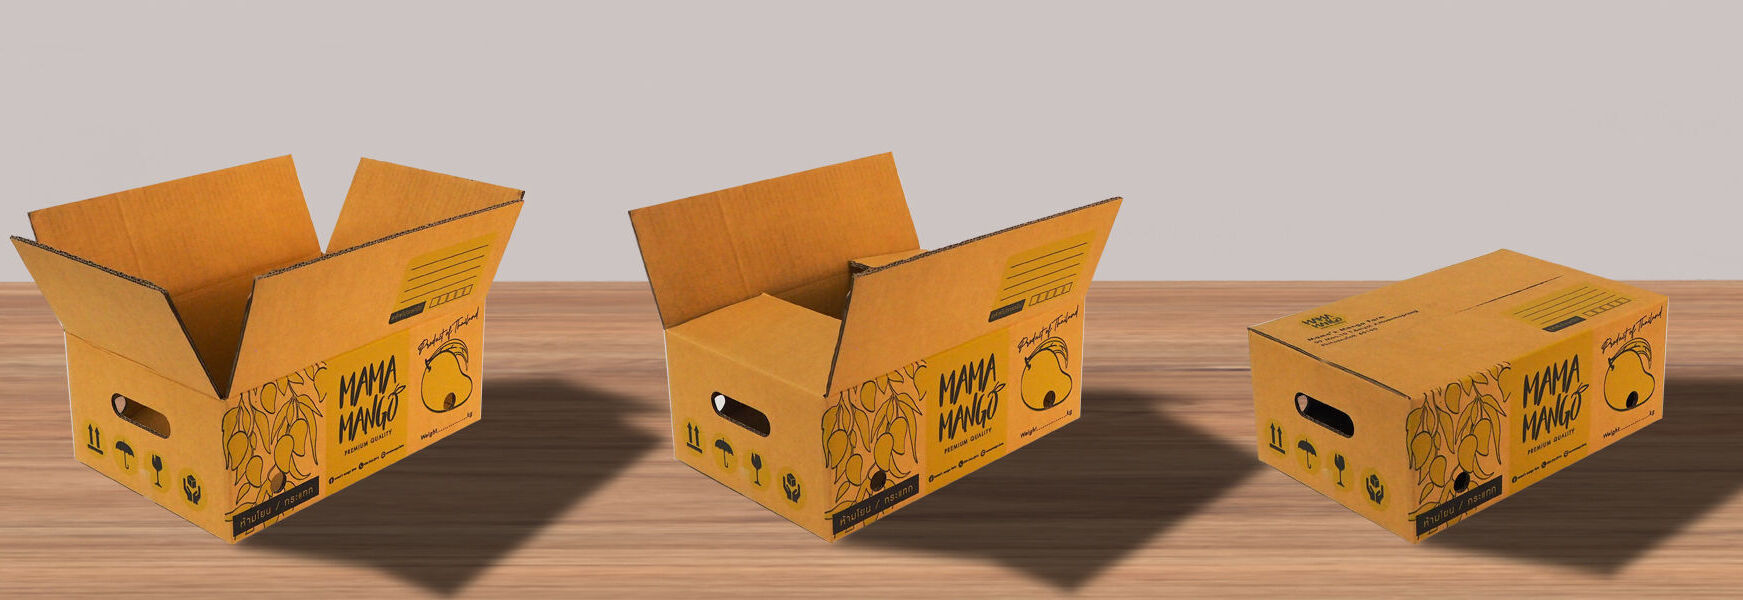 กล่องมะม่วงฝาชนเเบบมาตรฐานการขนส่ง